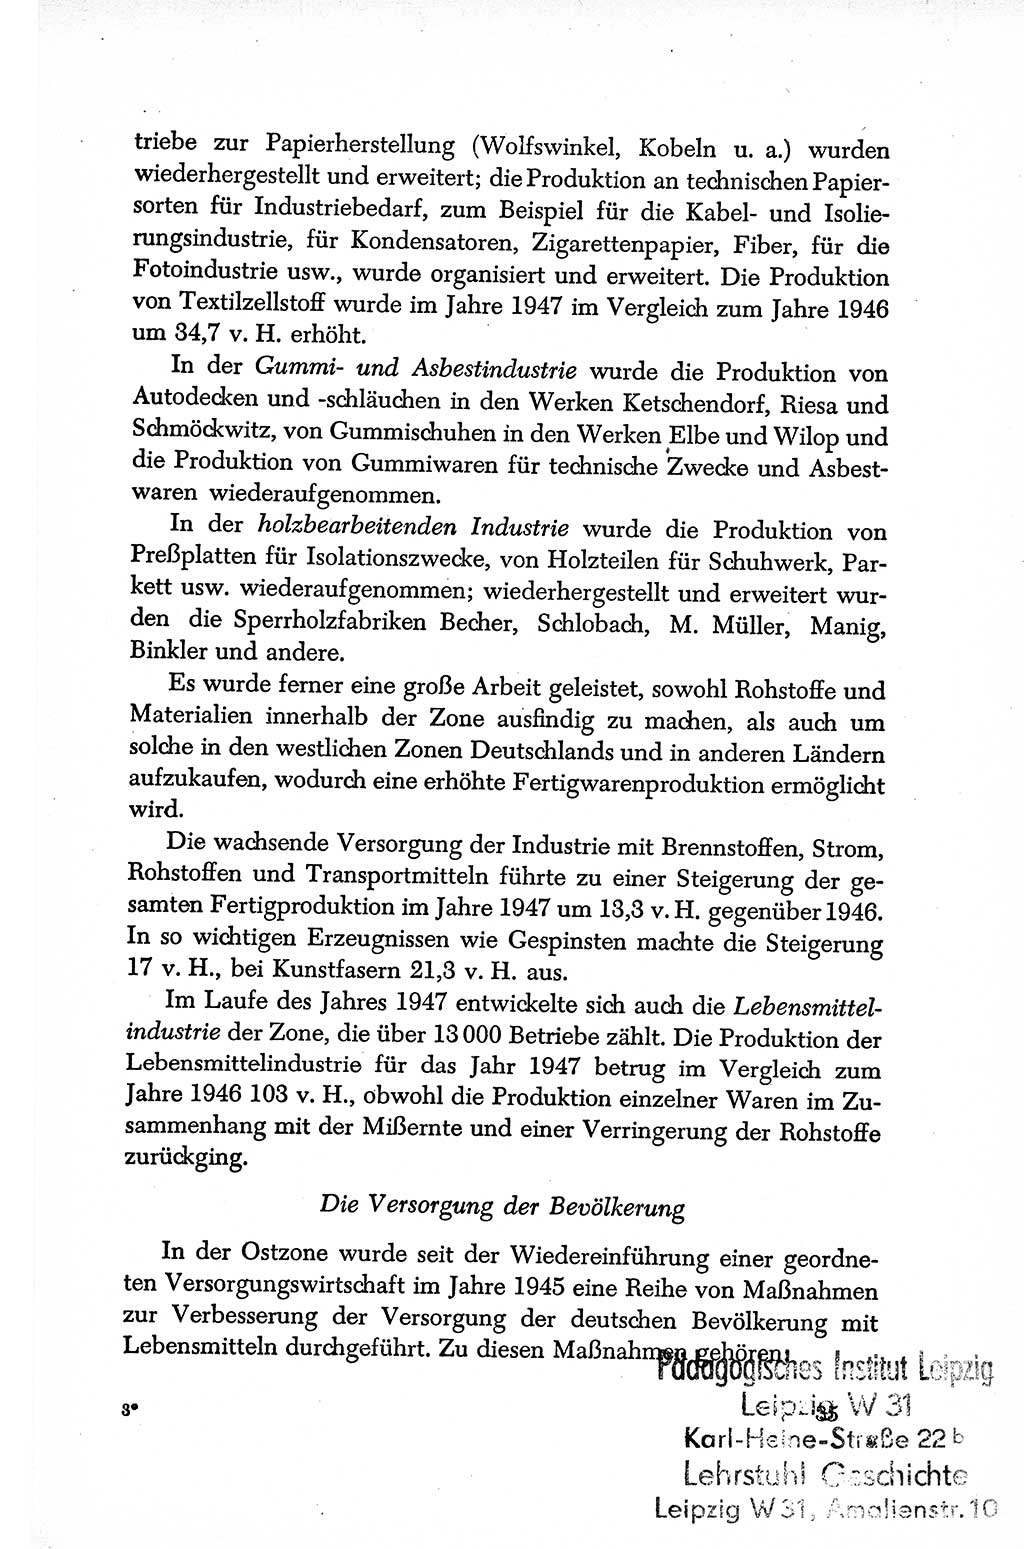 Dokumente der Sozialistischen Einheitspartei Deutschlands (SED) [Sowjetische Besatzungszone (SBZ) Deutschlands/Deutsche Demokratische Republik (DDR)] 1948-1950, Seite 35 (Dok. SED SBZ Dtl. DDR 1948-1950, S. 35)